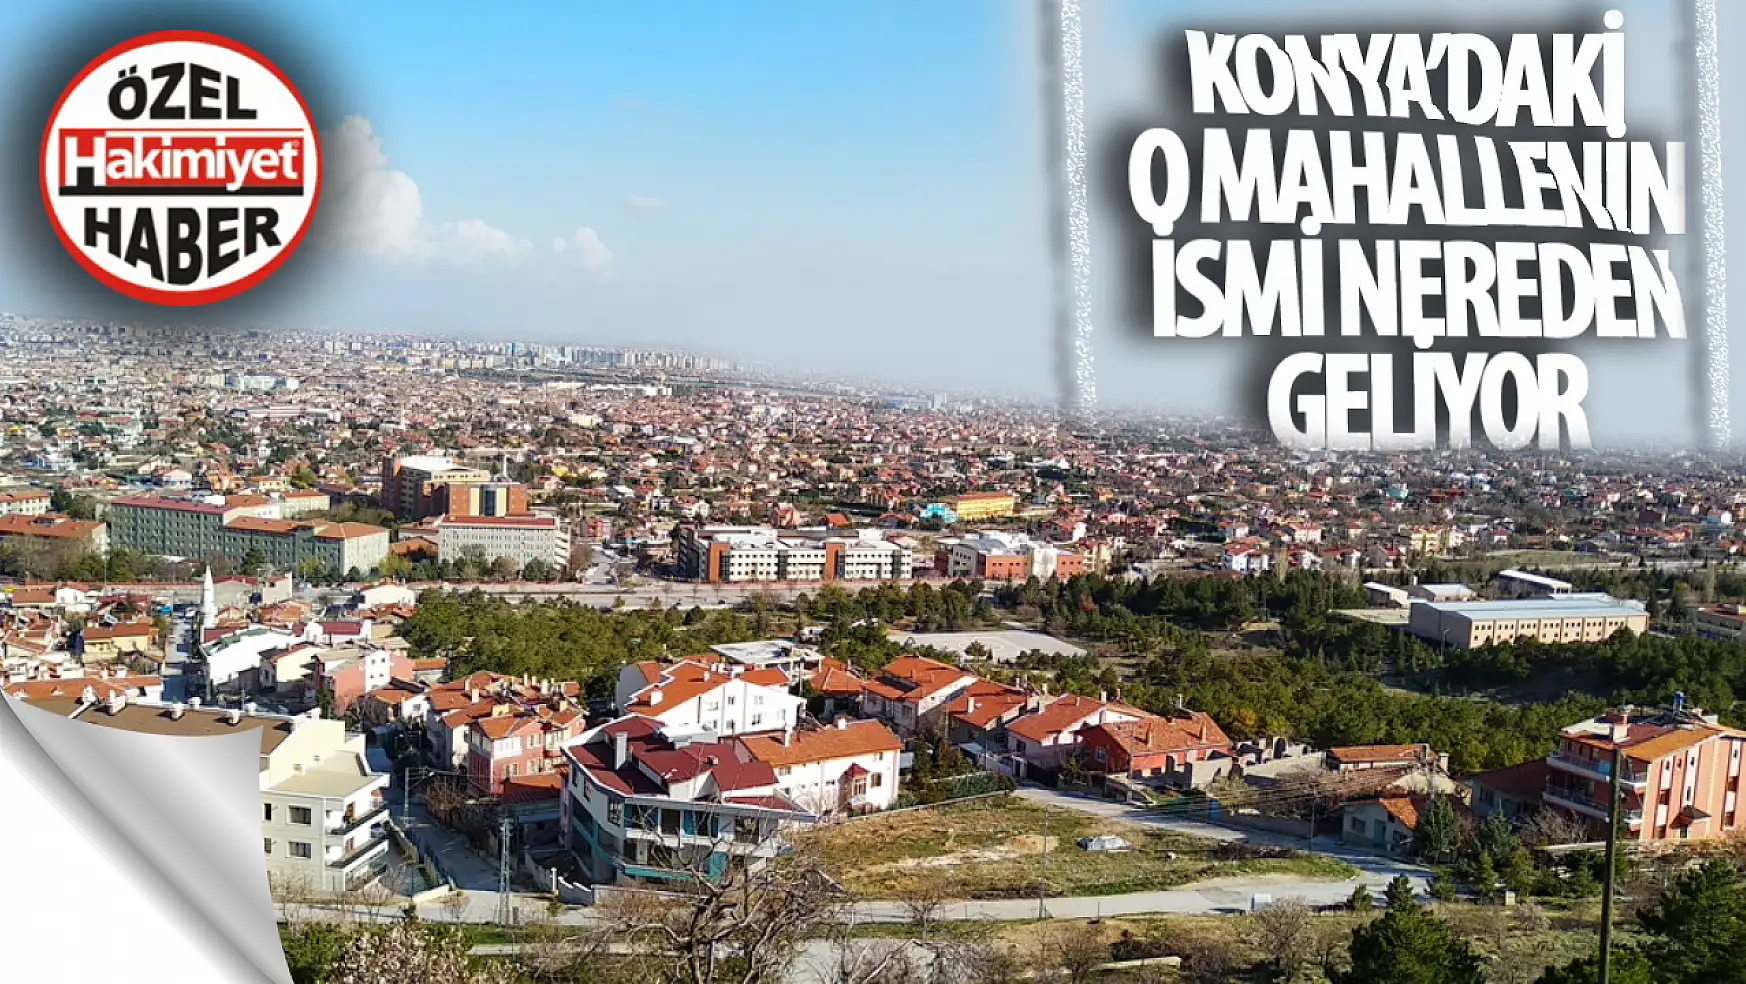 Konya'daki o mahallenin ismi nereden geliyor? Hiç merak ettiniz mi?